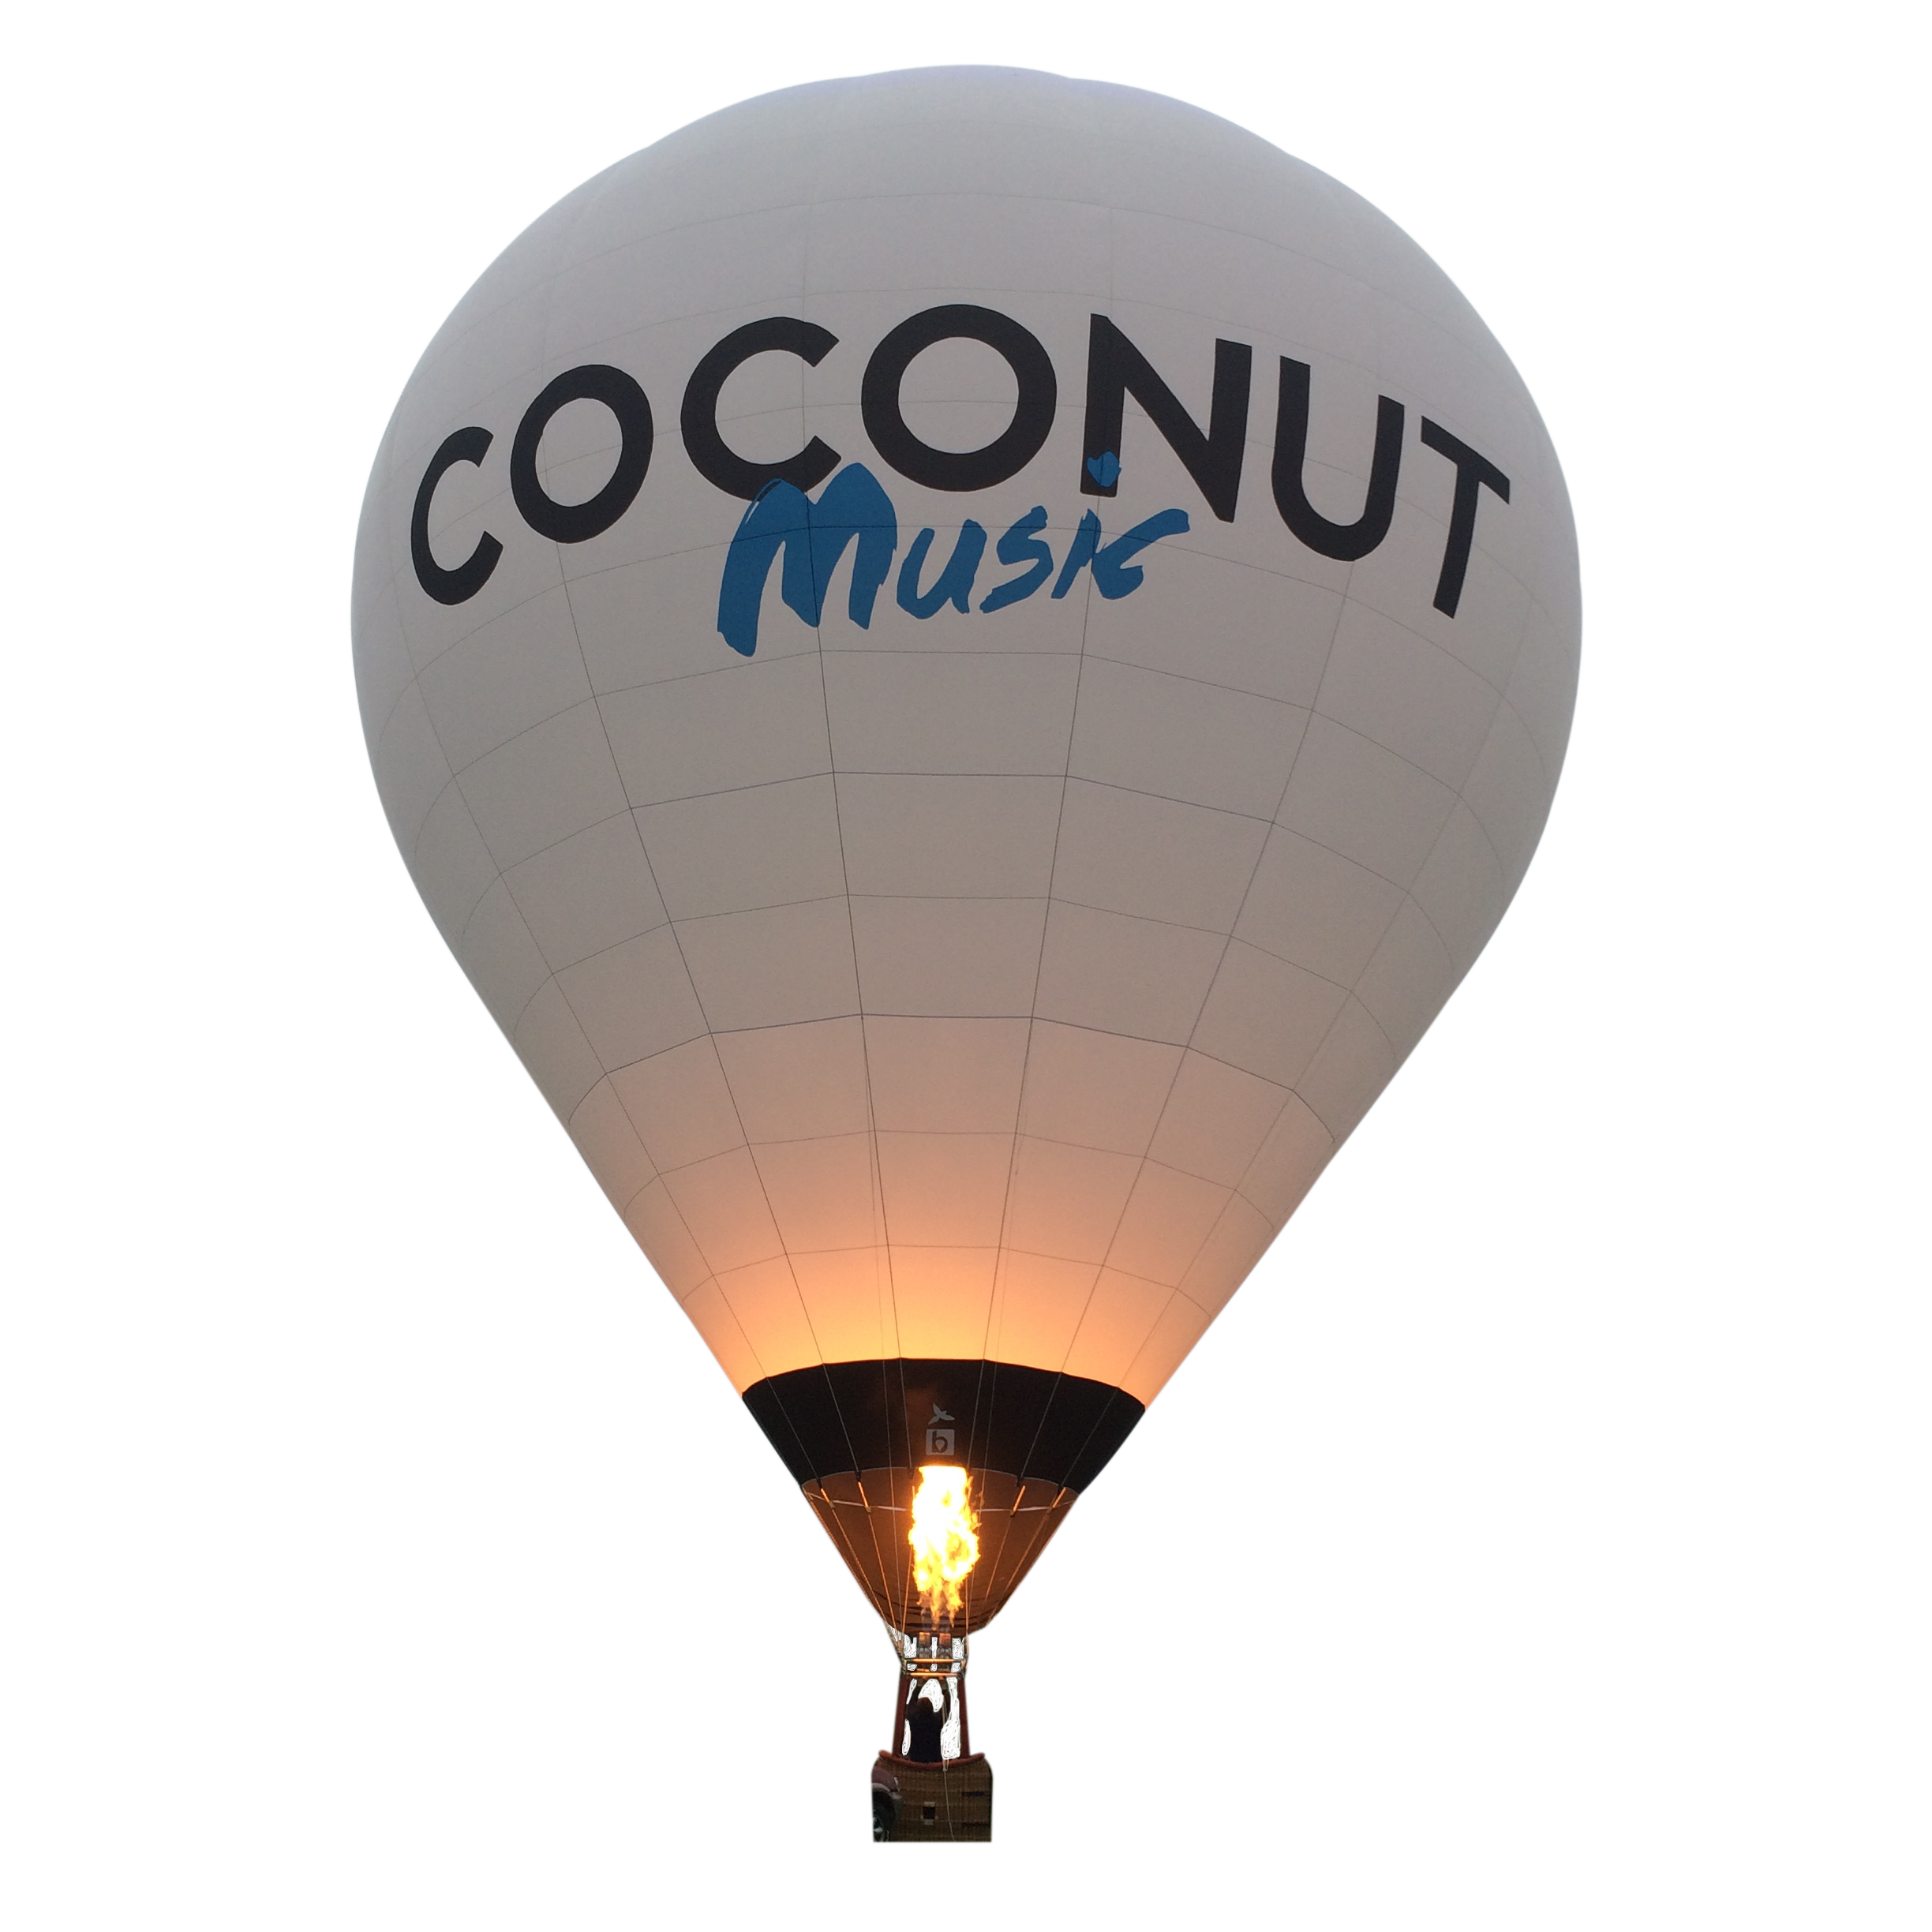 Envol montgolfière; montgolfière coconut music